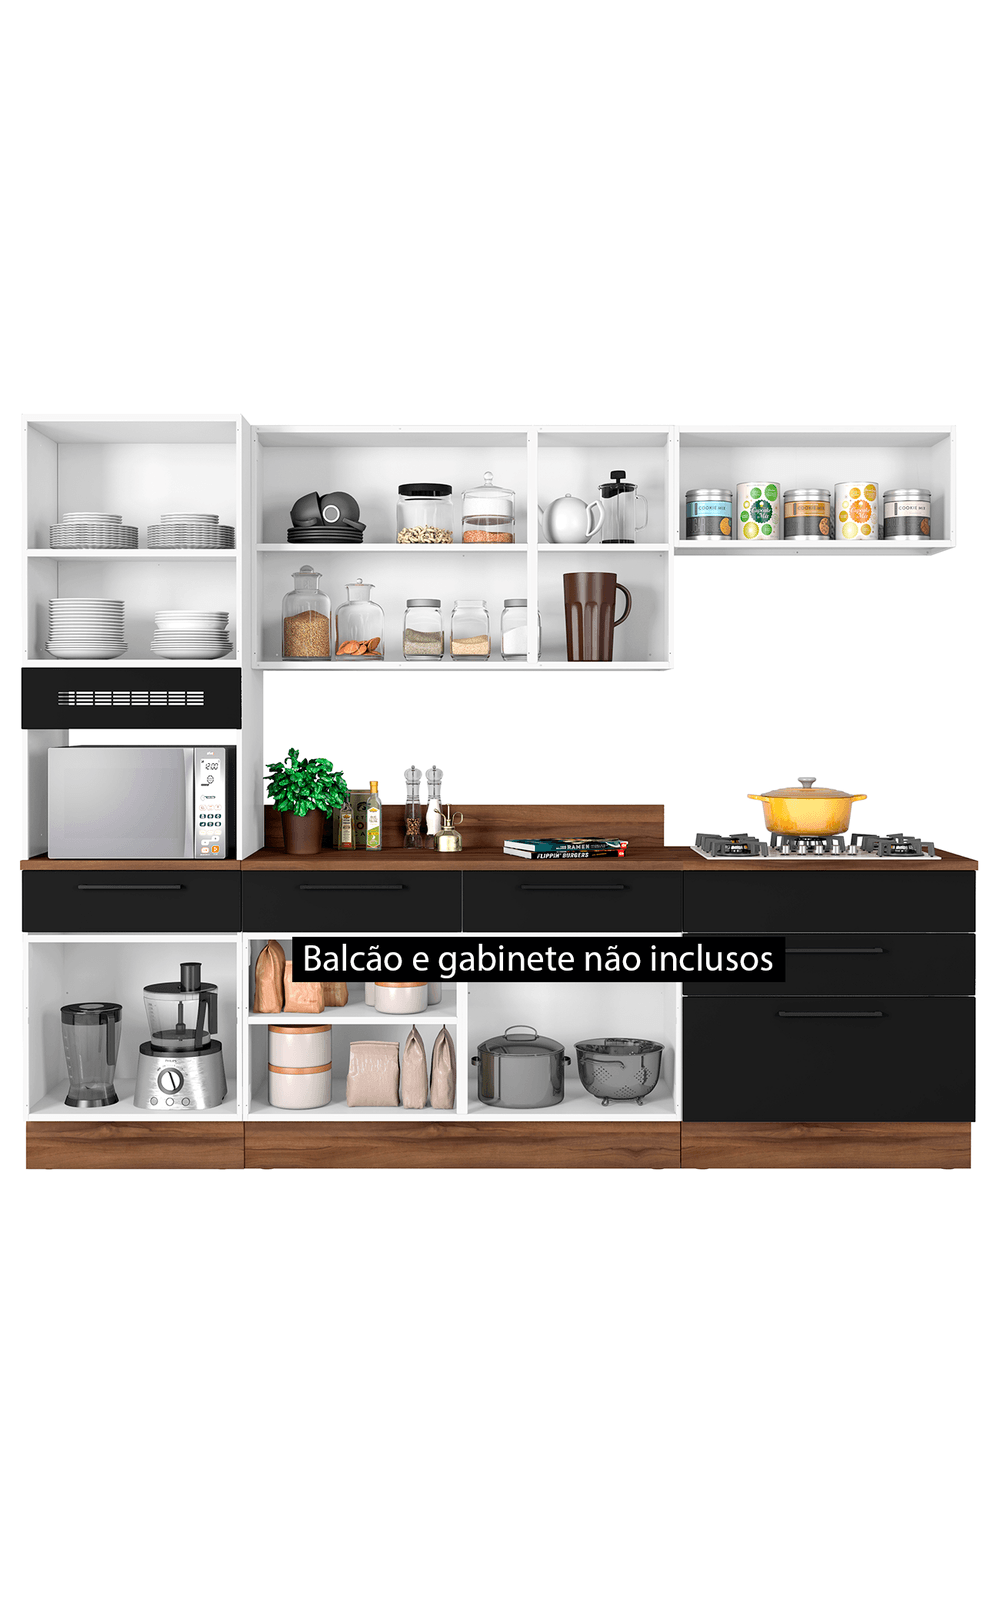 Foto 2 - Cozinha Exclusive em Aço 3 Peças 6 Portas 1 Gaveta Com Vidro Itatiaia